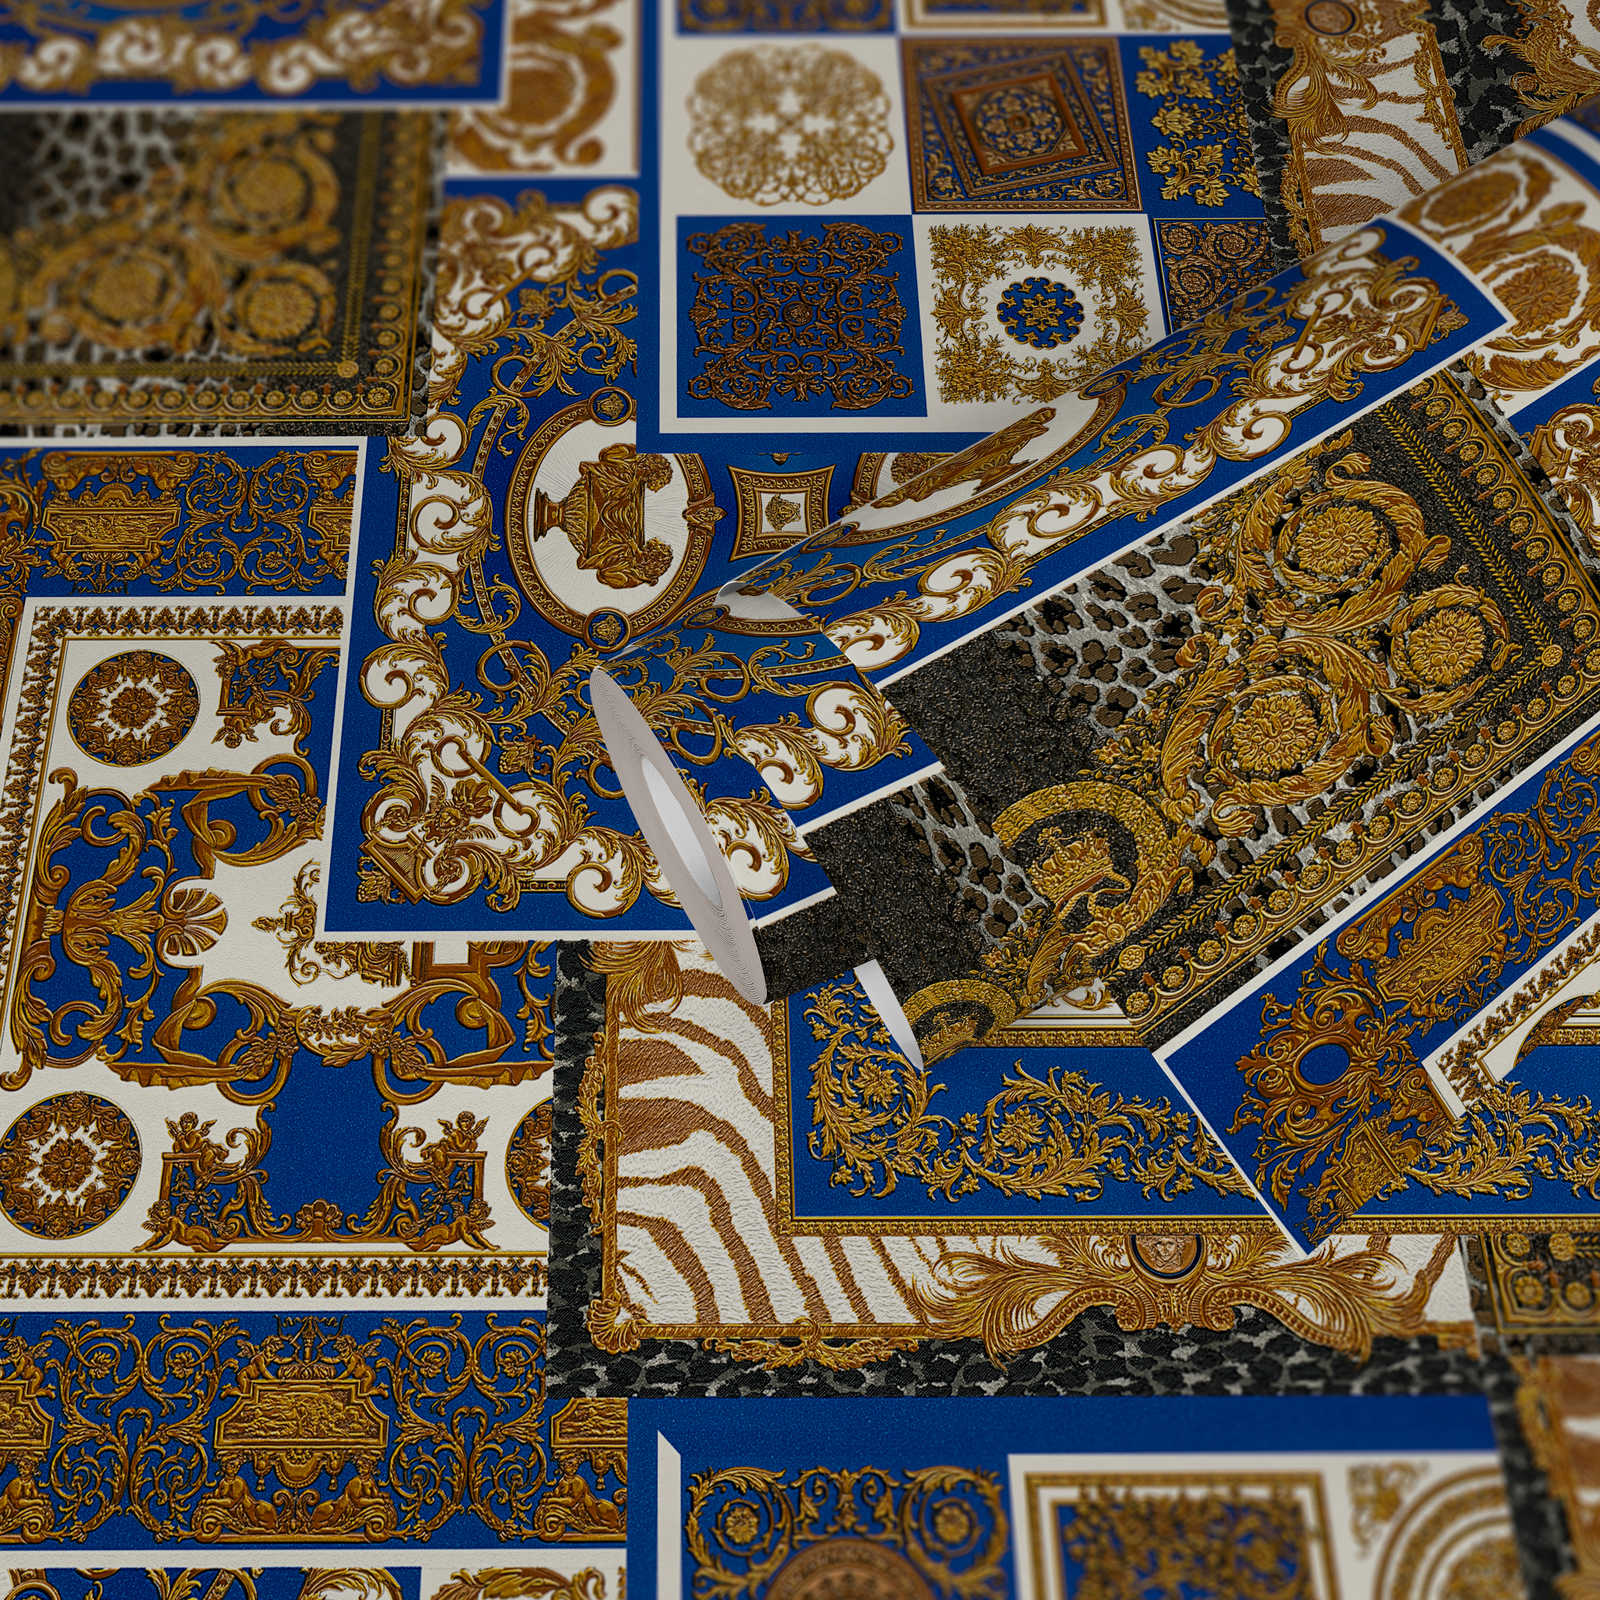             VERSACE Home behang barokke details & dierenprint - goud, blauw, wit
        